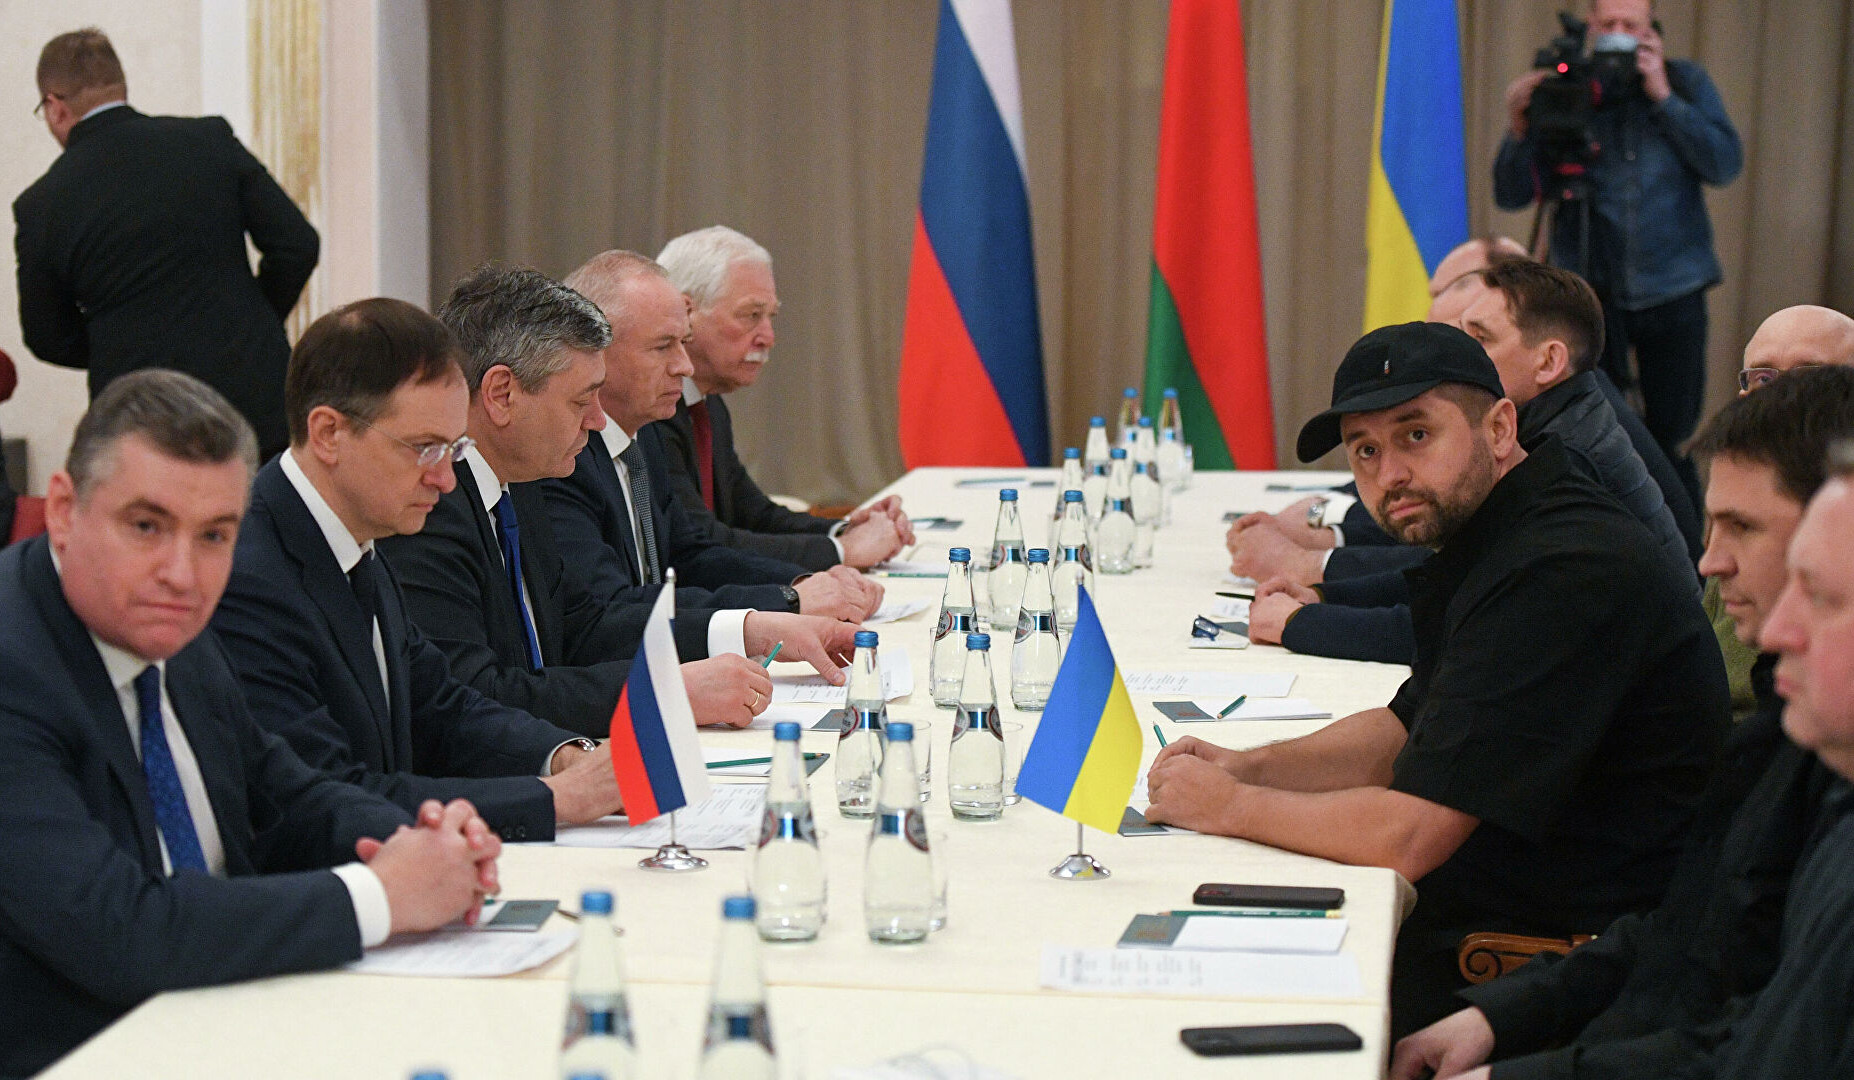 Ռուսաստանի և Ուկրաինայի բանակցությունները շարունակվում են. շուտով կմեկնարկի երրորդ փուլը